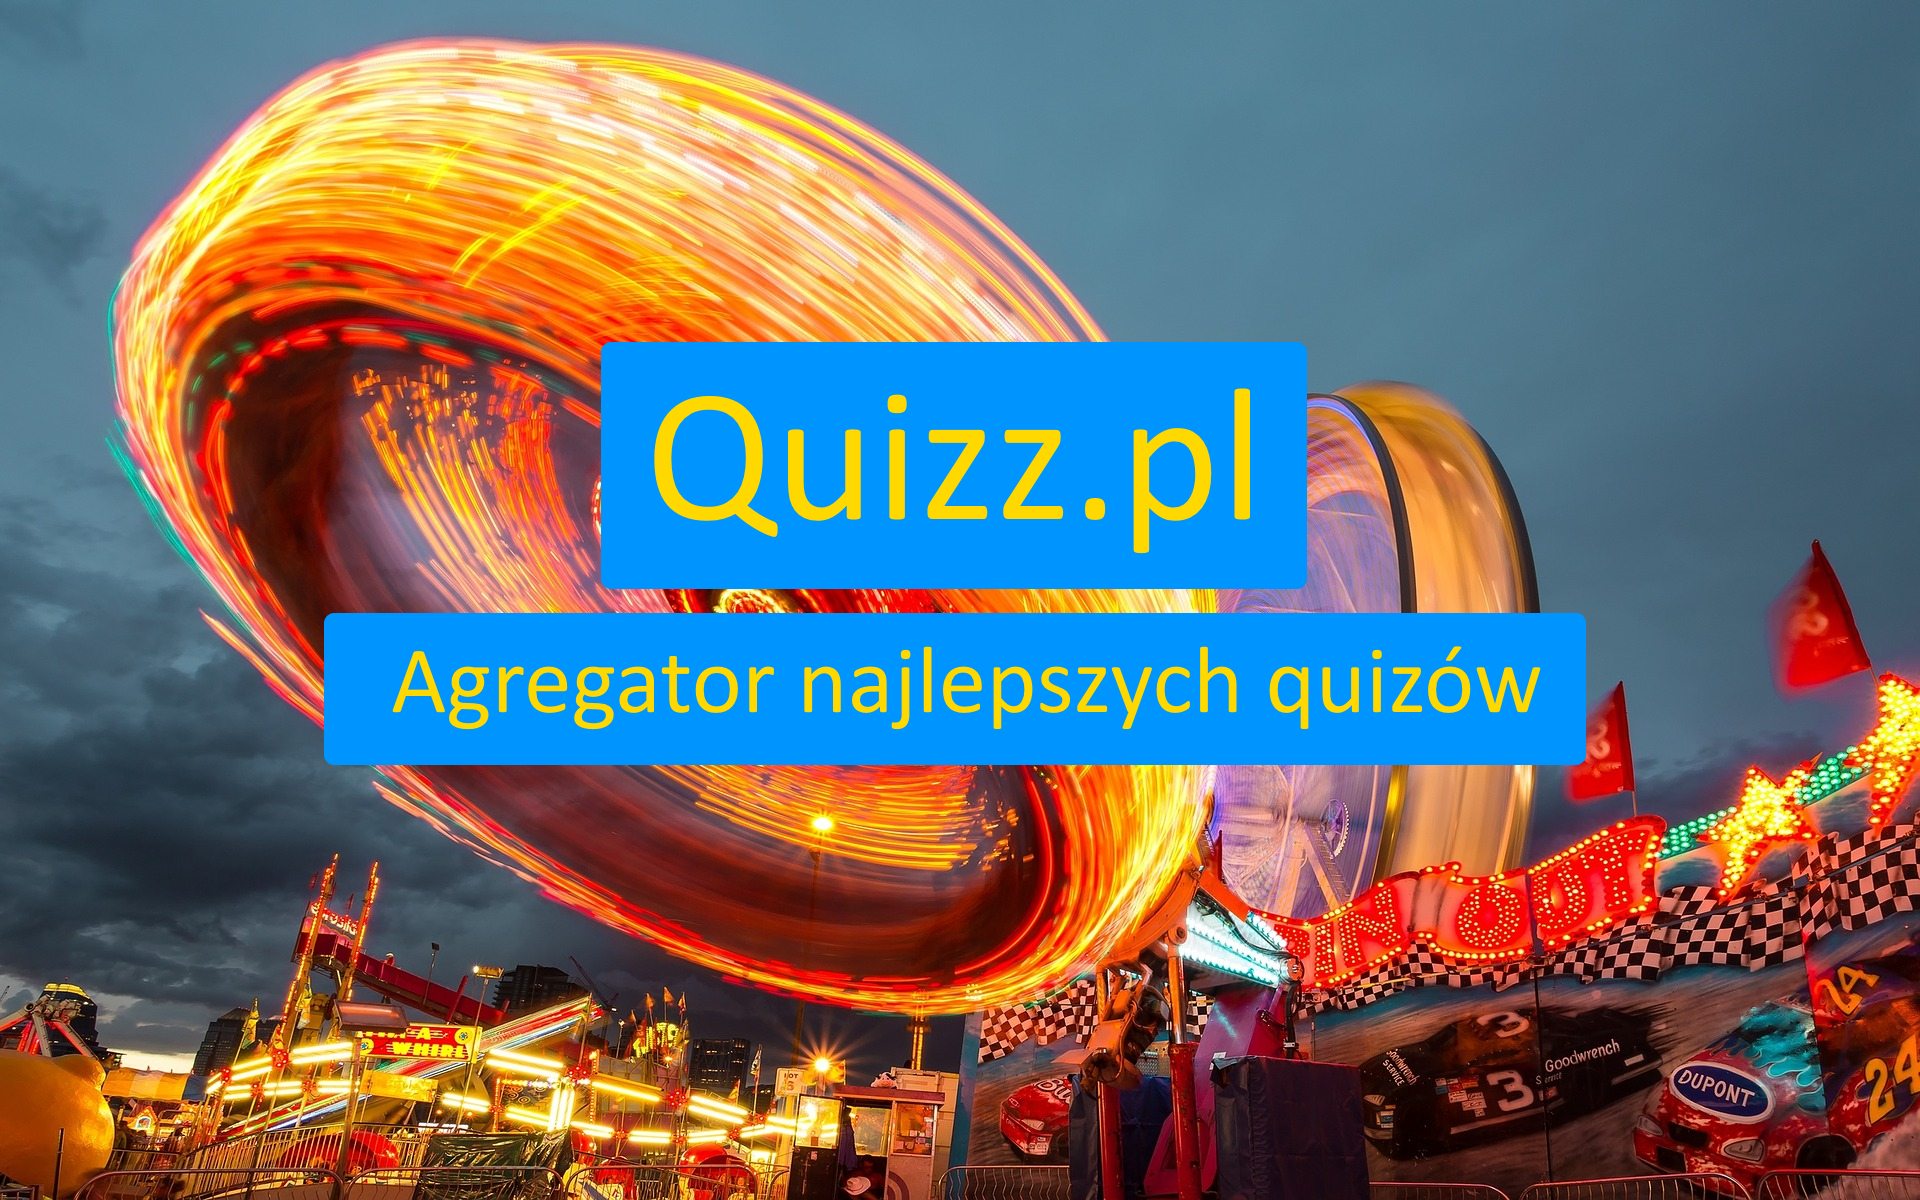 Dla dziewczyn - bezpłatne quizy, testy wiedzy i ankiety - www.quizz.pl